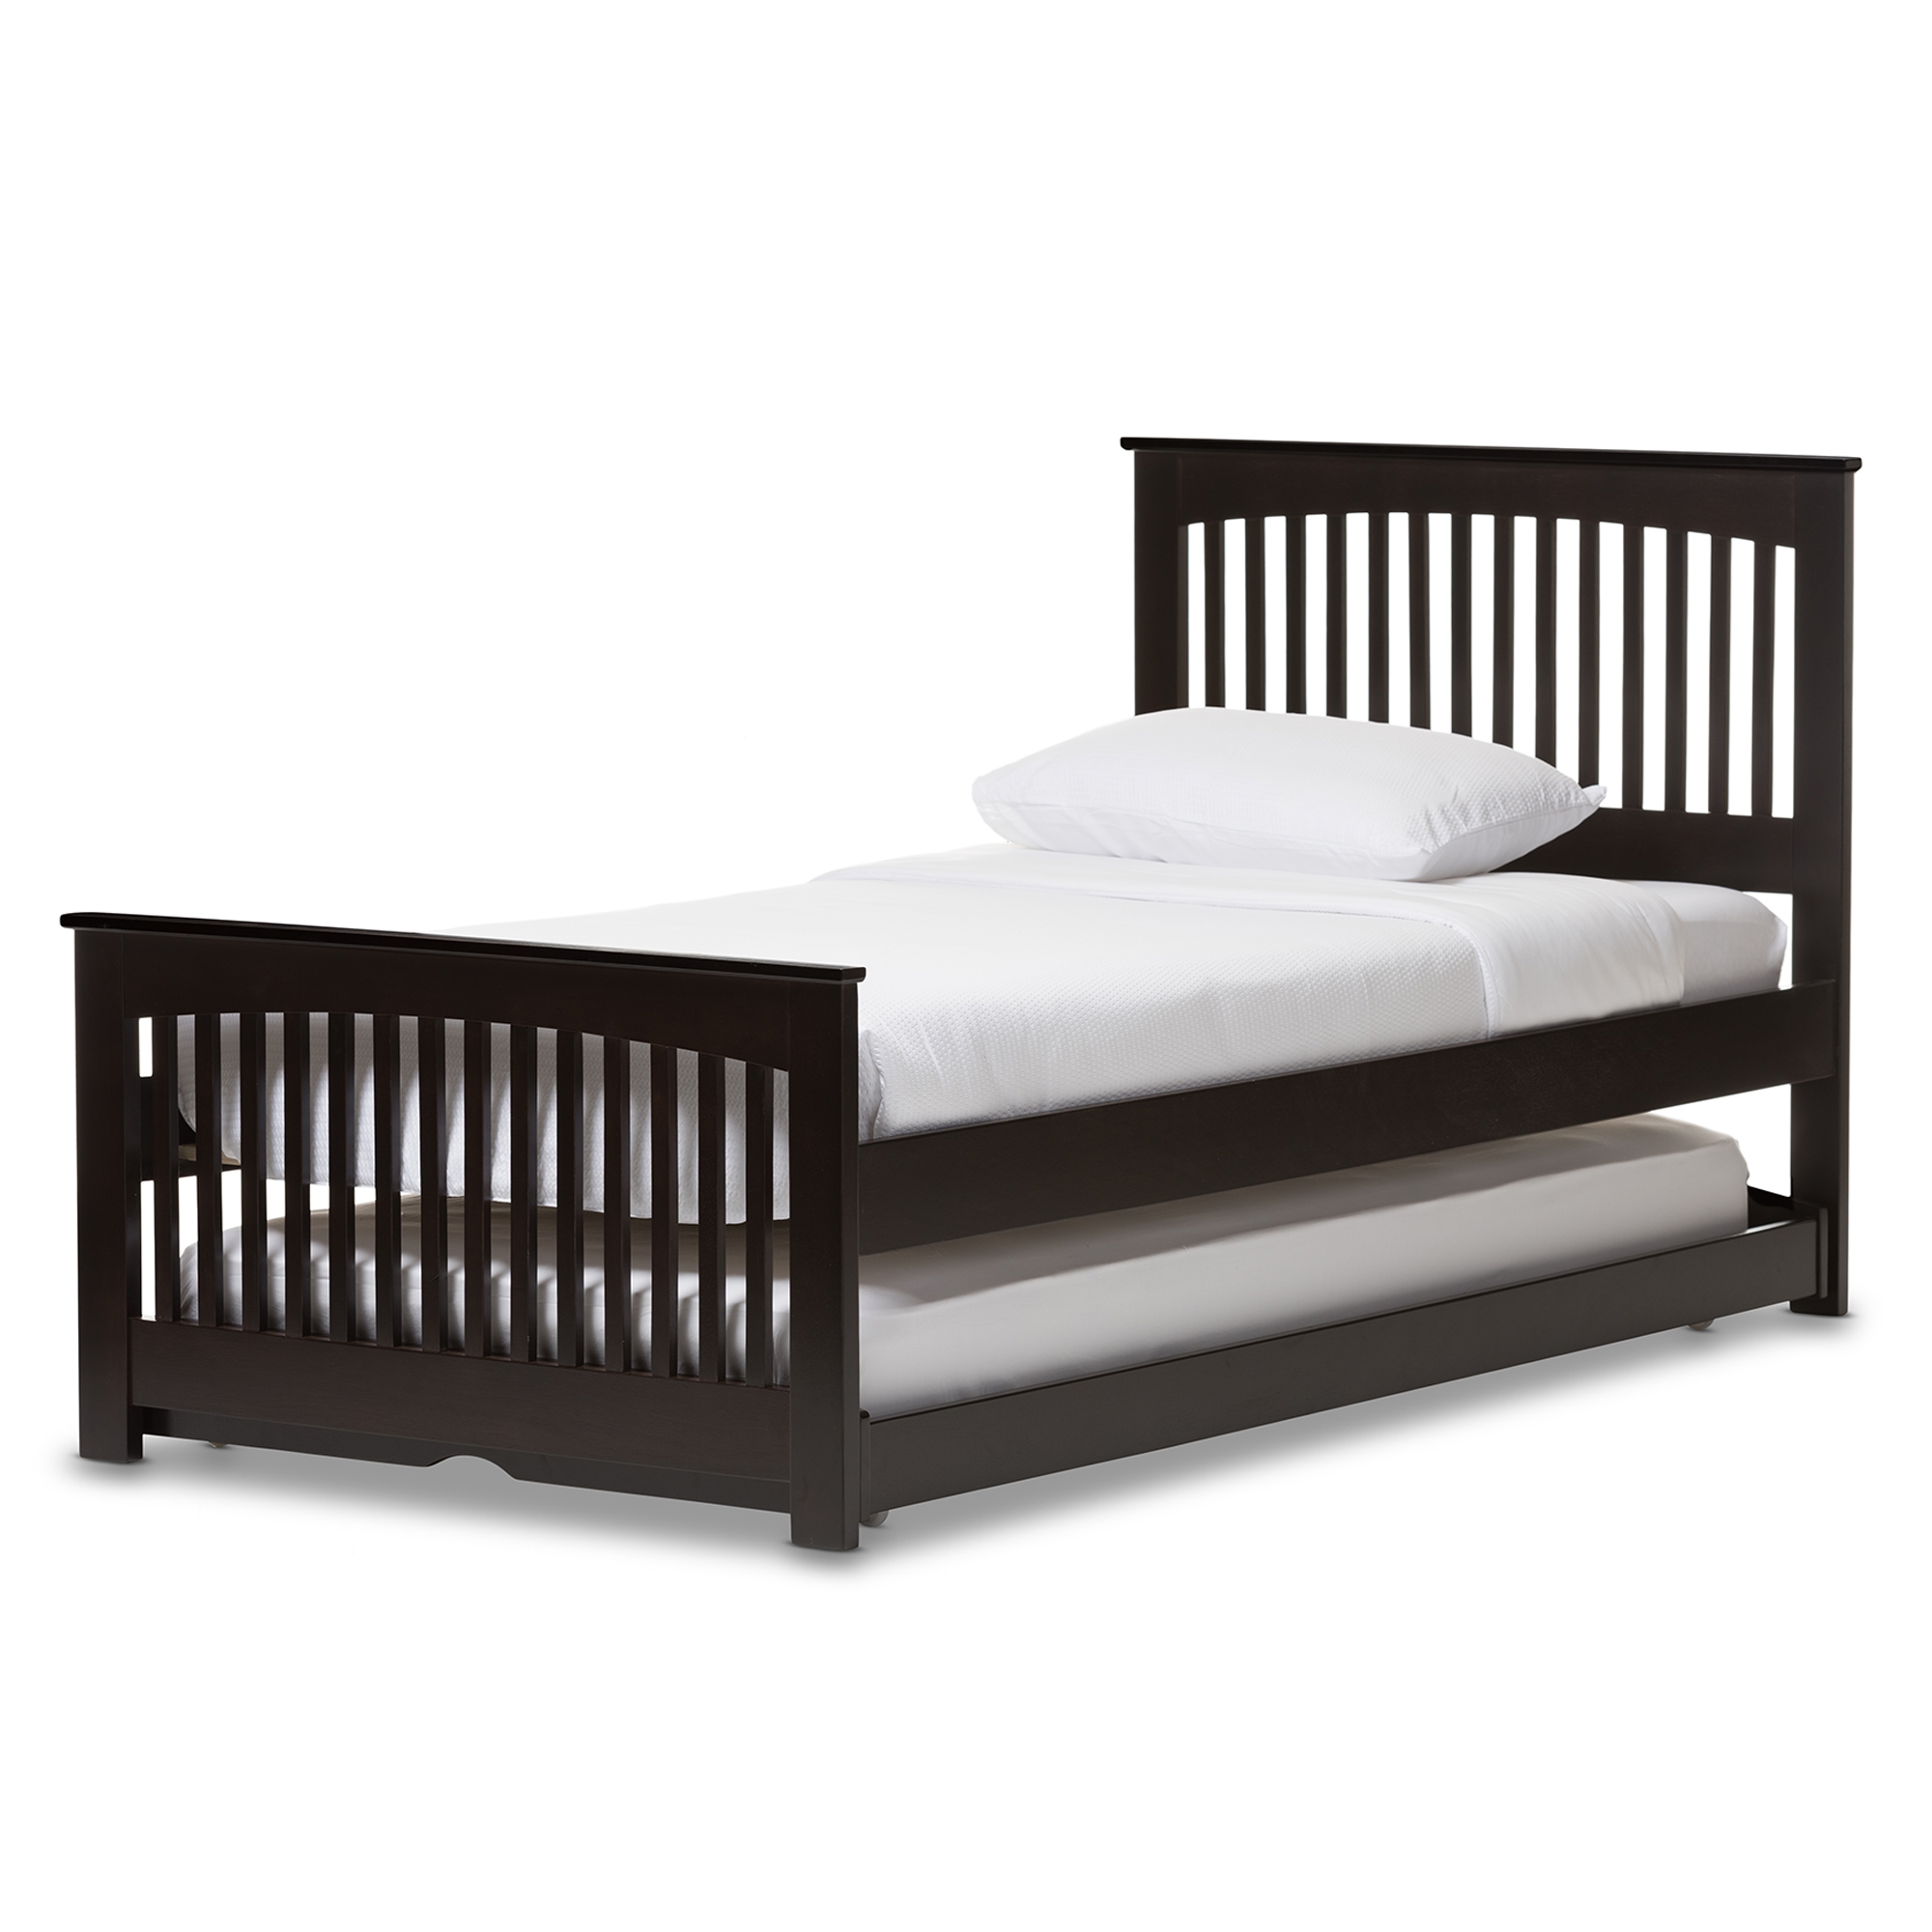 Twin Size Platform Bed Slat Kit Metal Frame Black Brown Kid Guest Room Furniture 